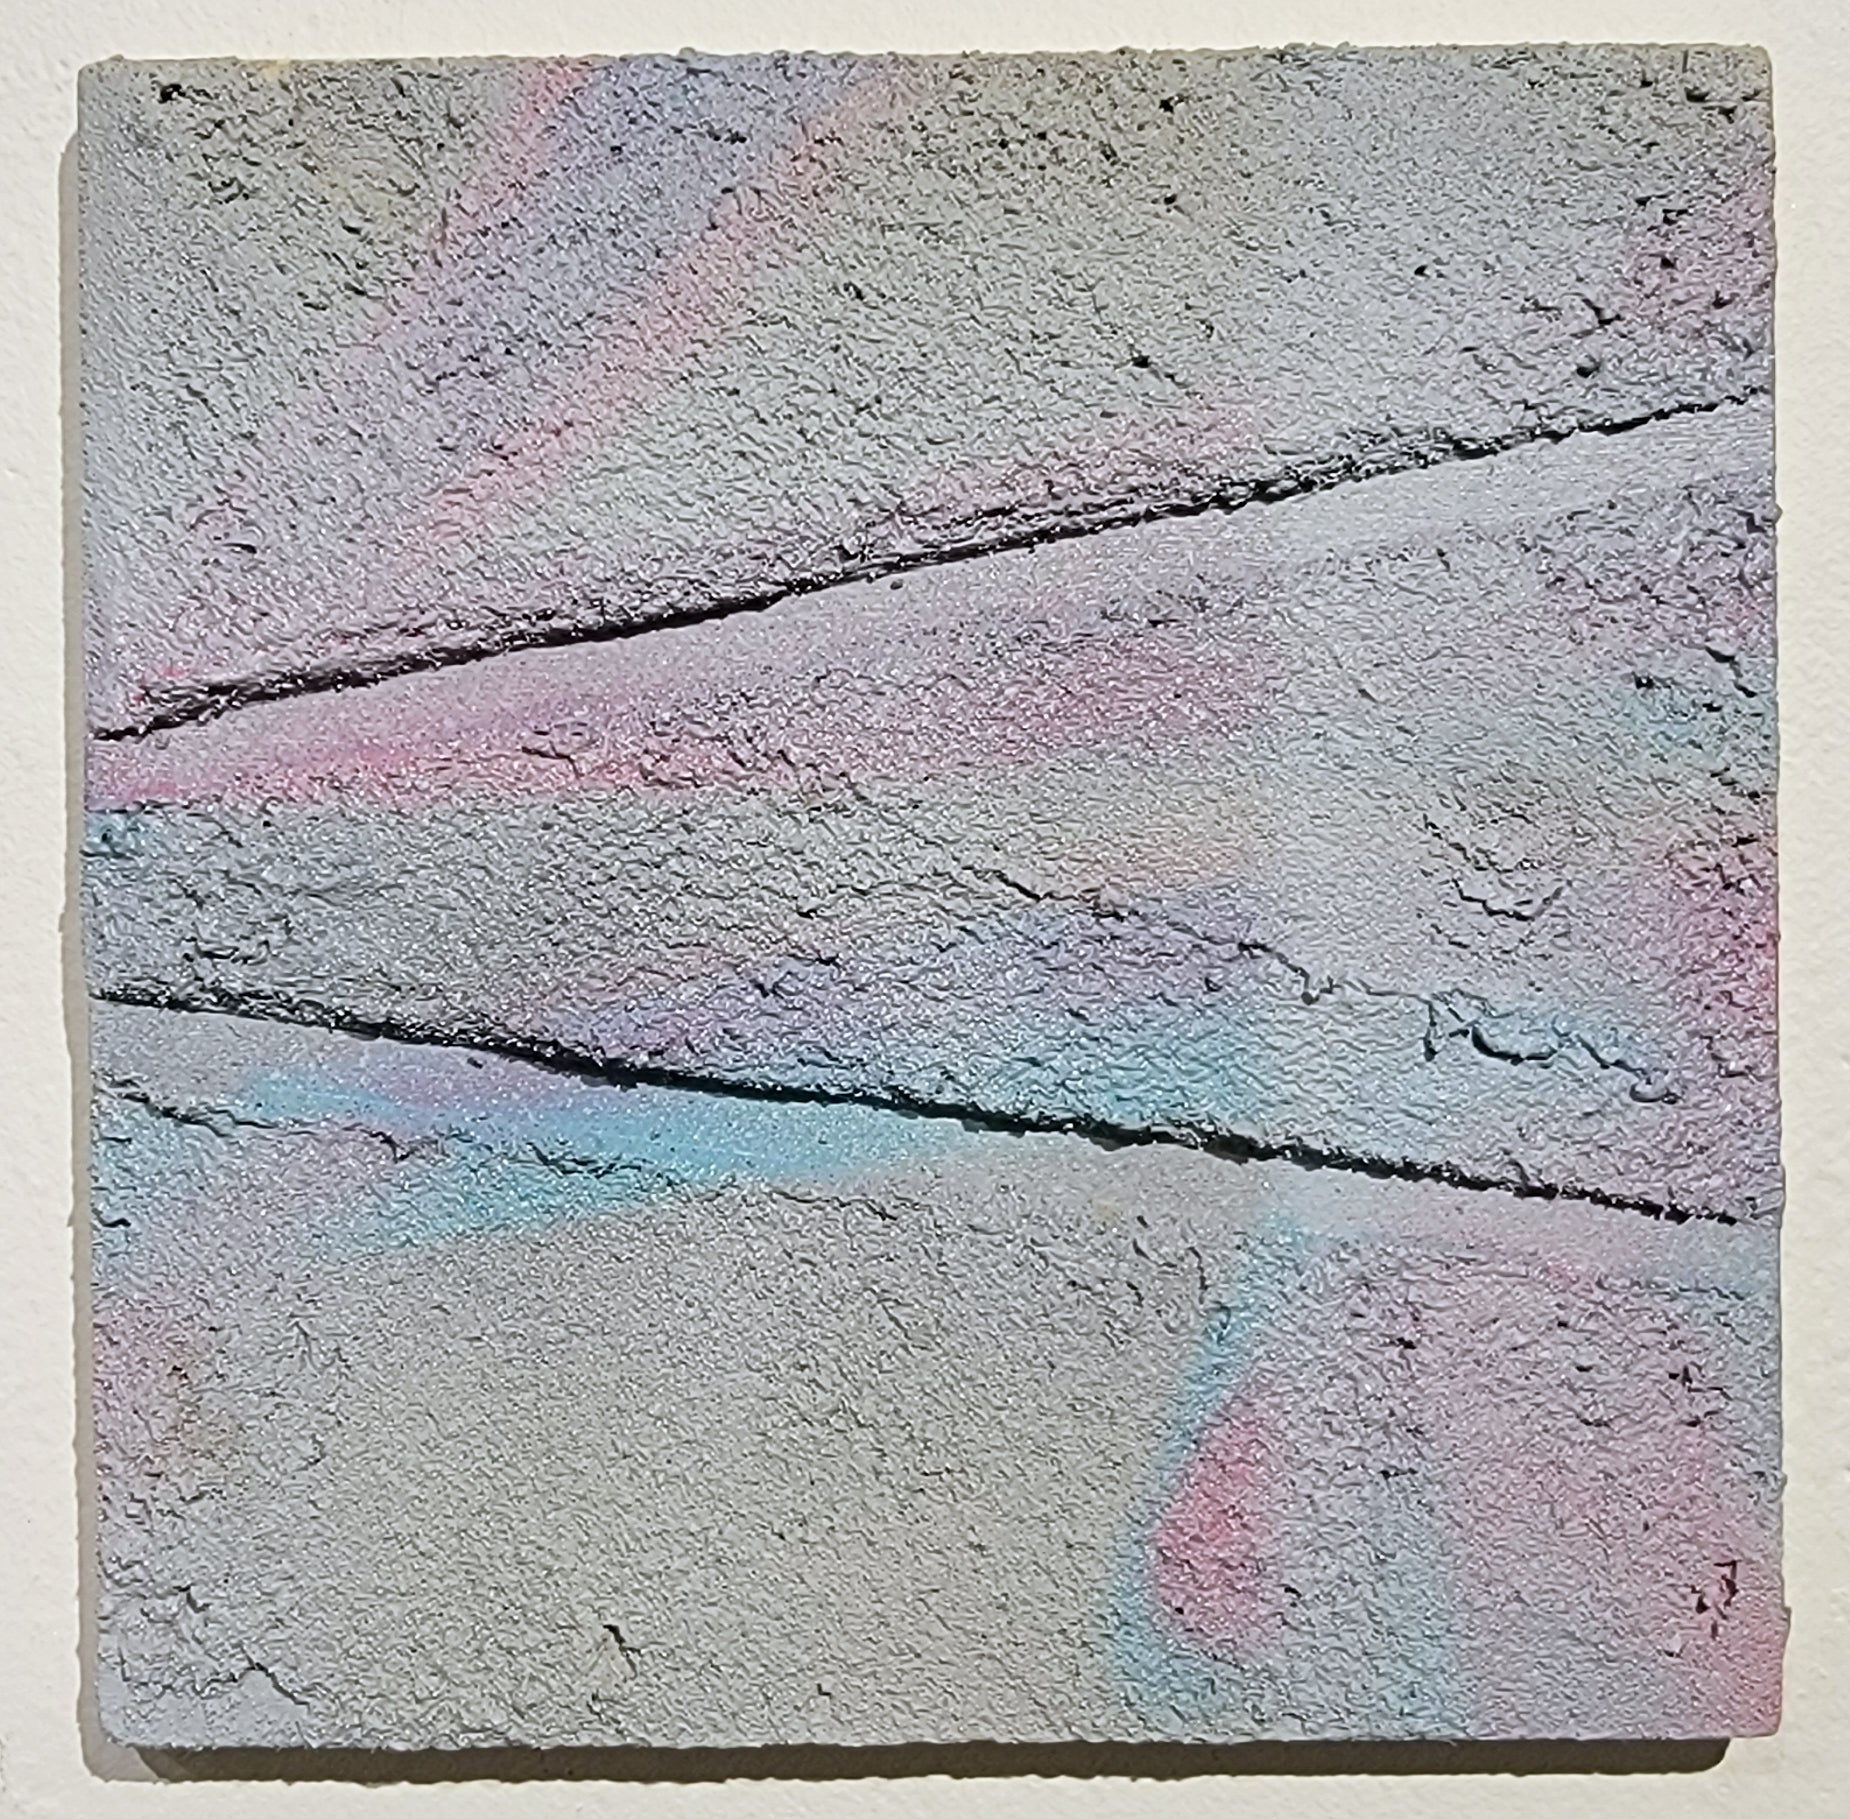 Concrete Study #4 by Victorio Villa